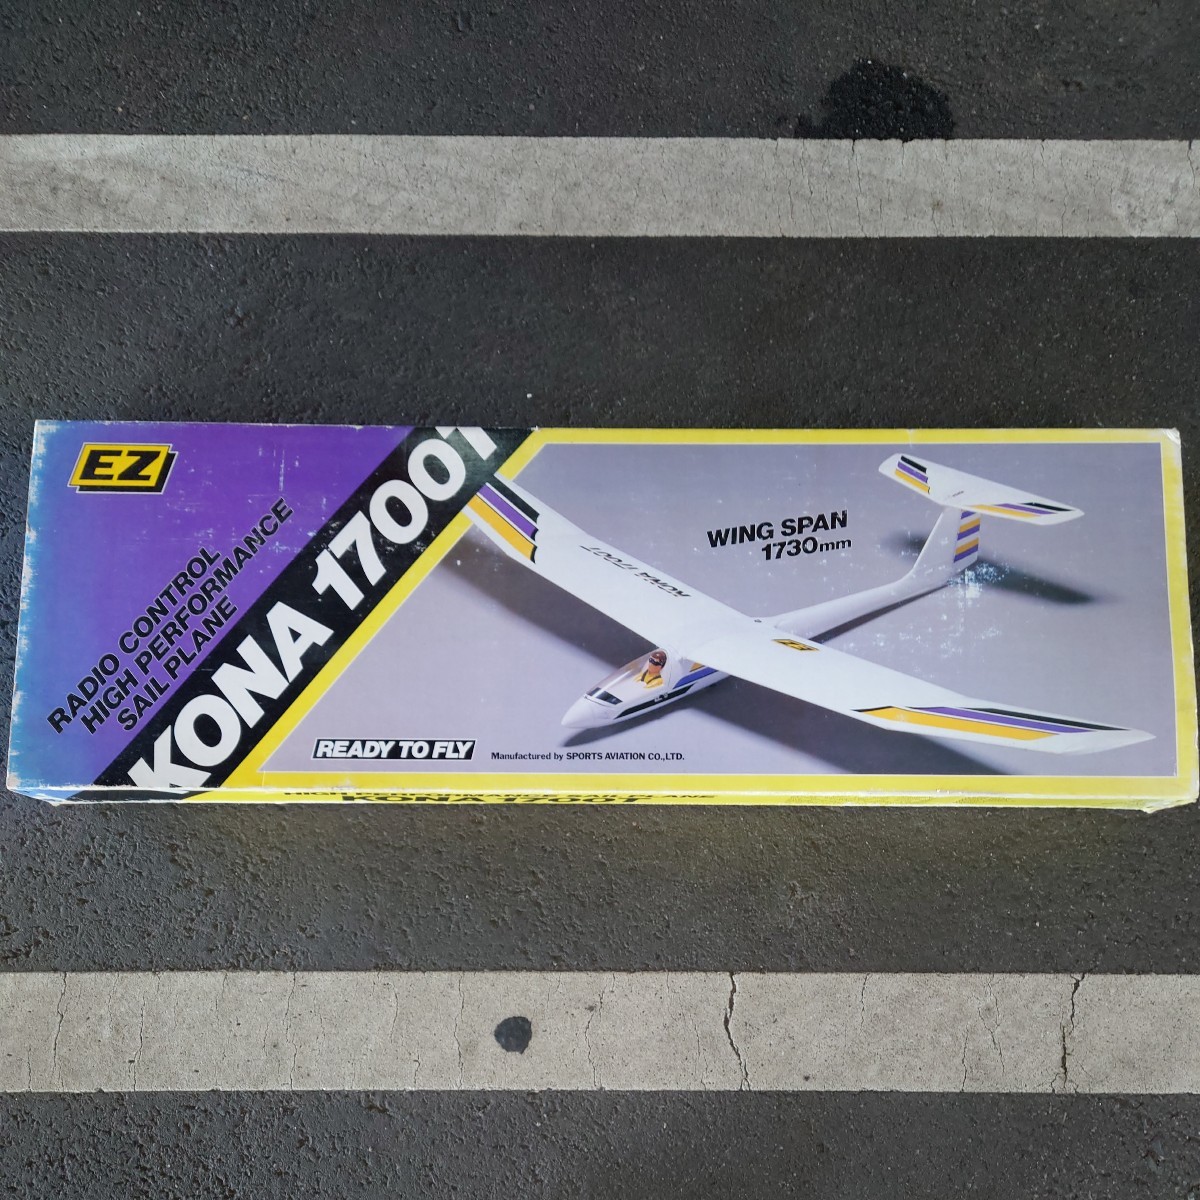  delivery OK model EZ. law half finished kit wing length 1730mm KONA 1700T valuable model 